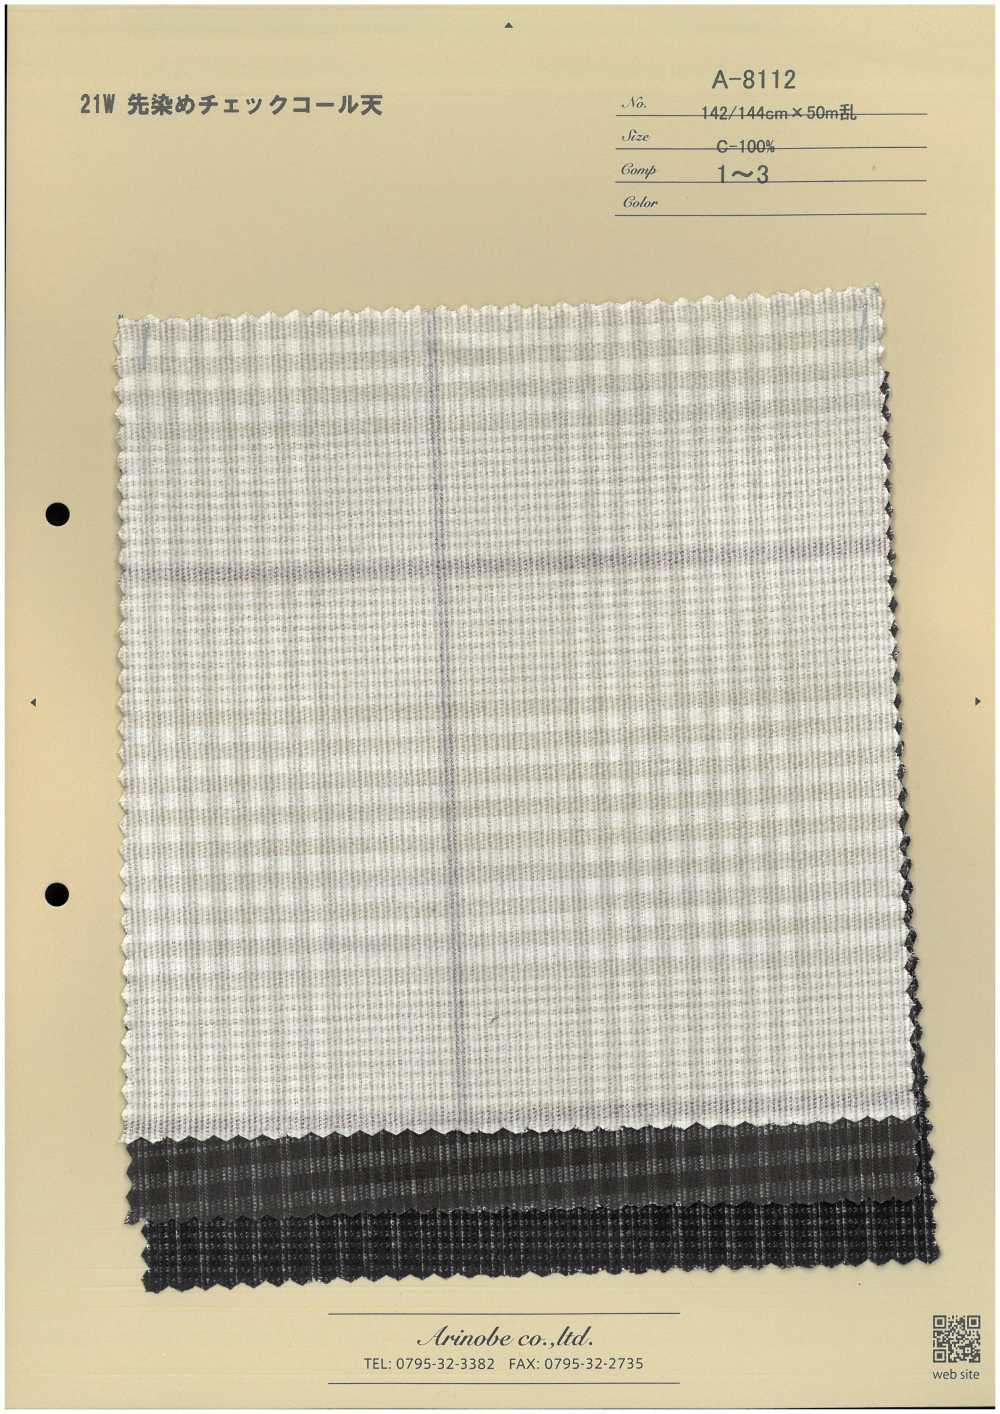 A-8112 21W Garngefärbter, Karierter Cord[Textilgewebe] ARINOBE CO., LTD.